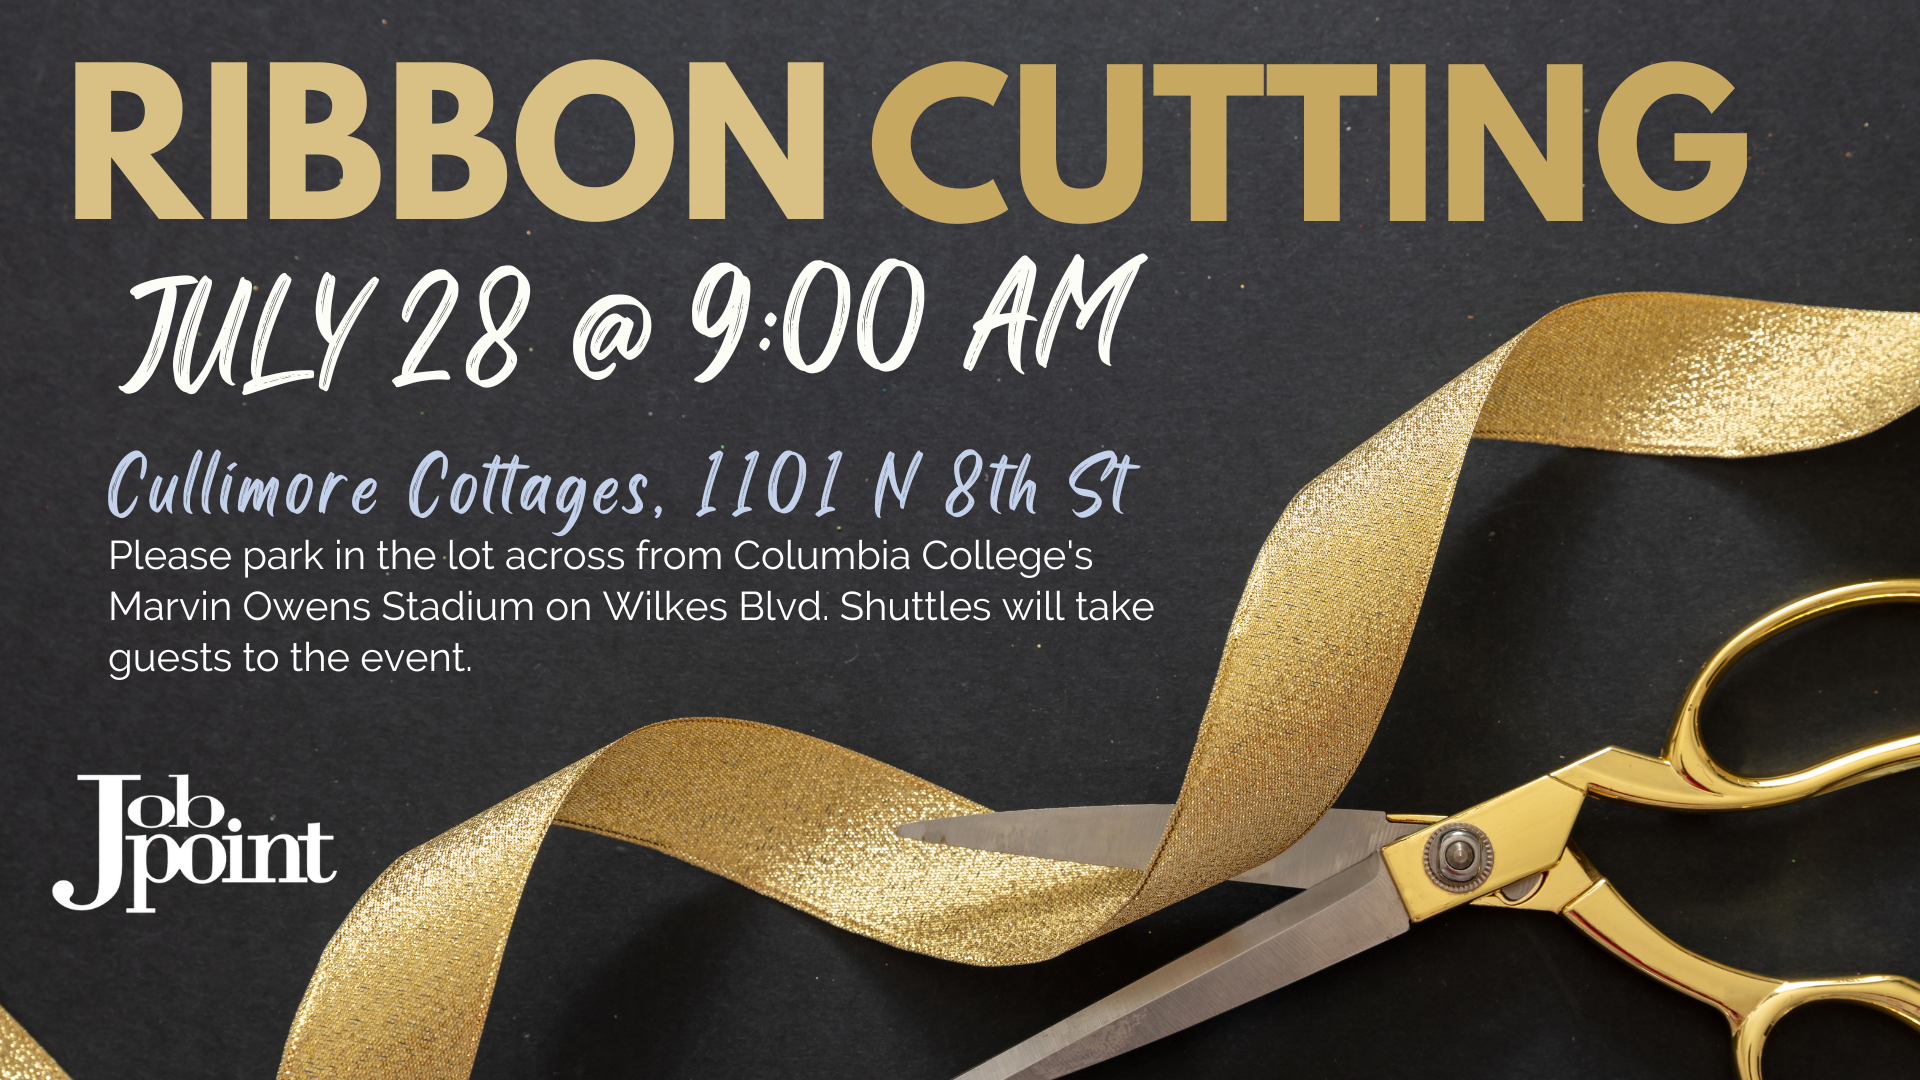 Ribbon Cutting July 28, 2022 at 9:00 am at 1101 N 8th St.